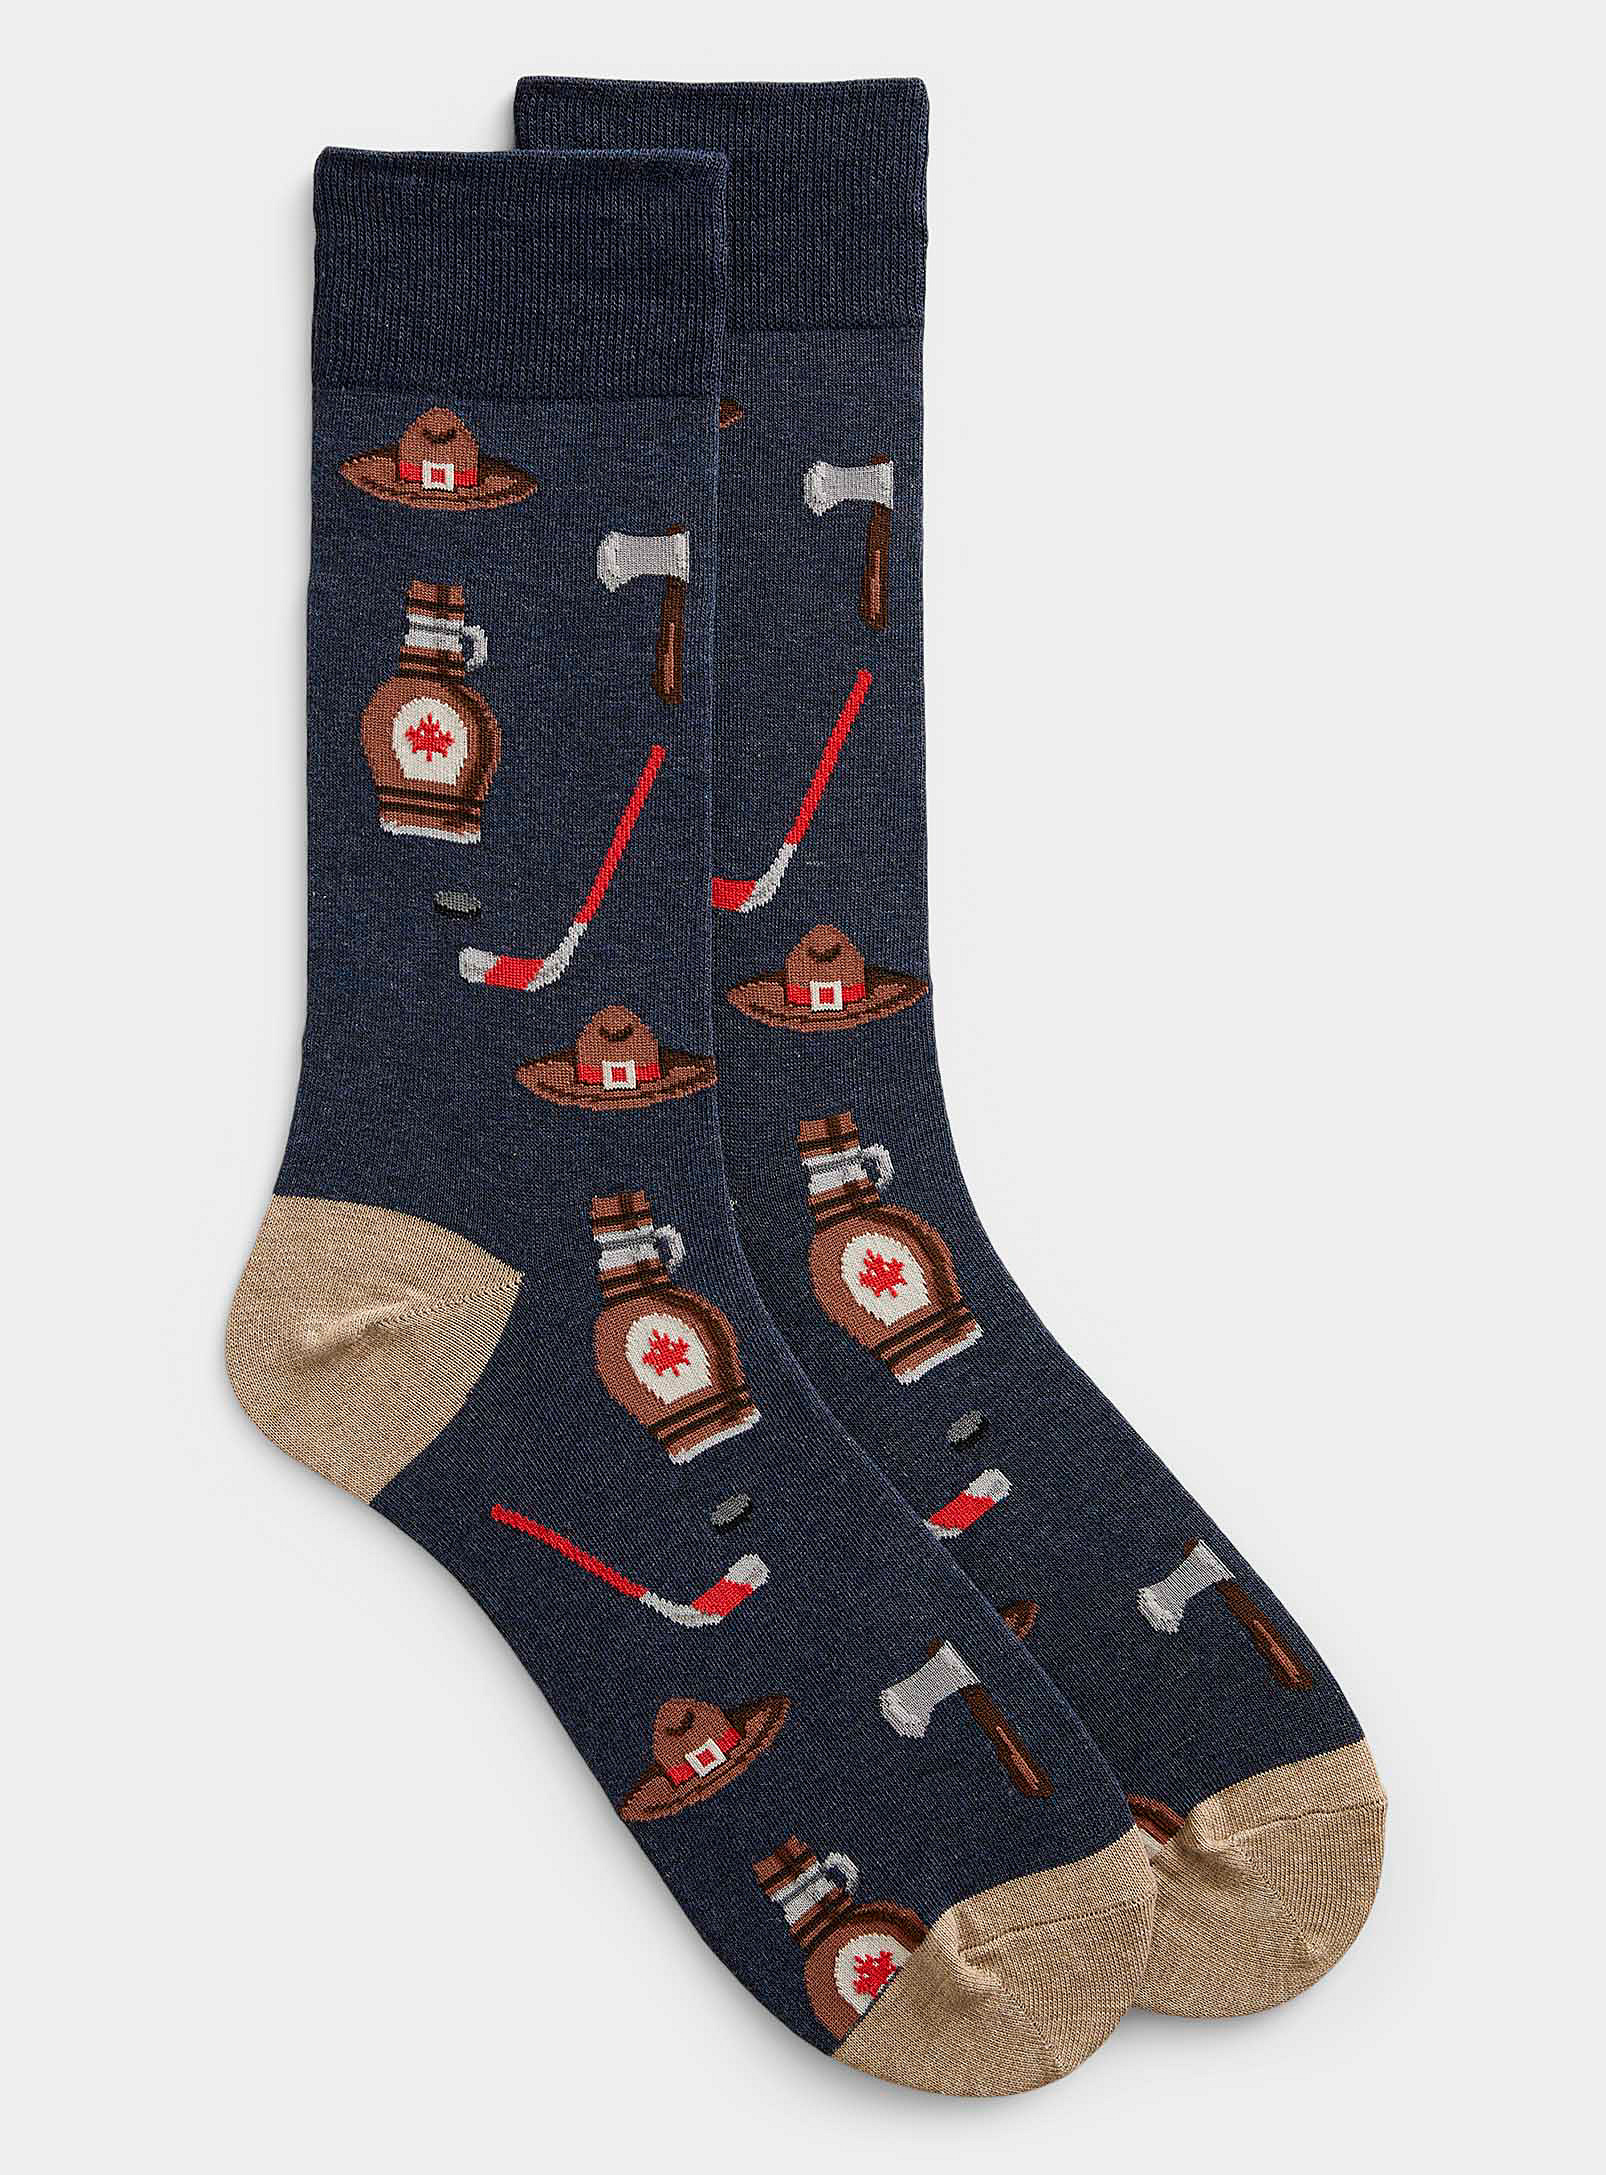 Hot Sox - Men's Canadian emblem sock